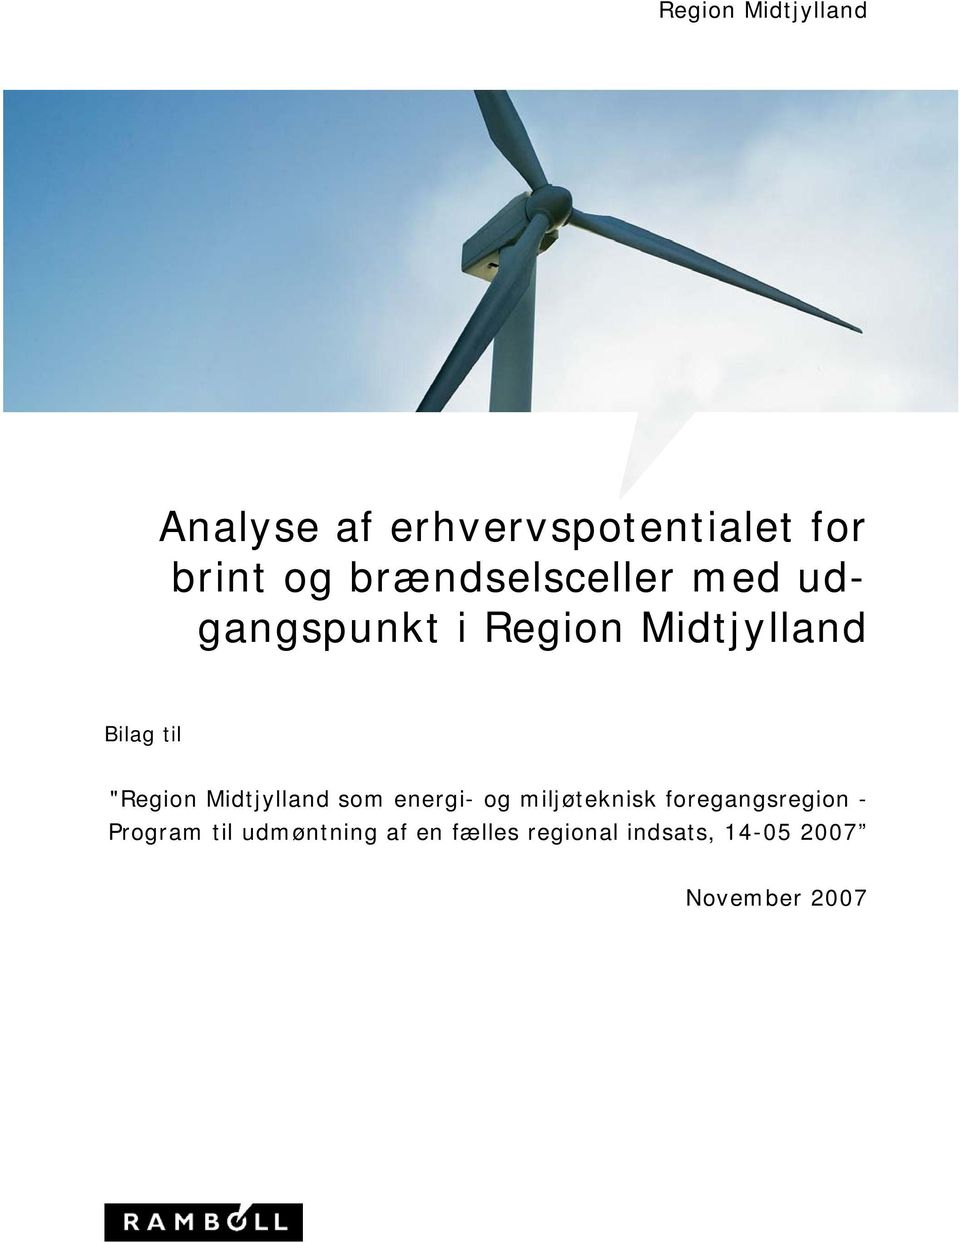 "Region Midtjylland som energi- og miljøteknisk foregangsregion -